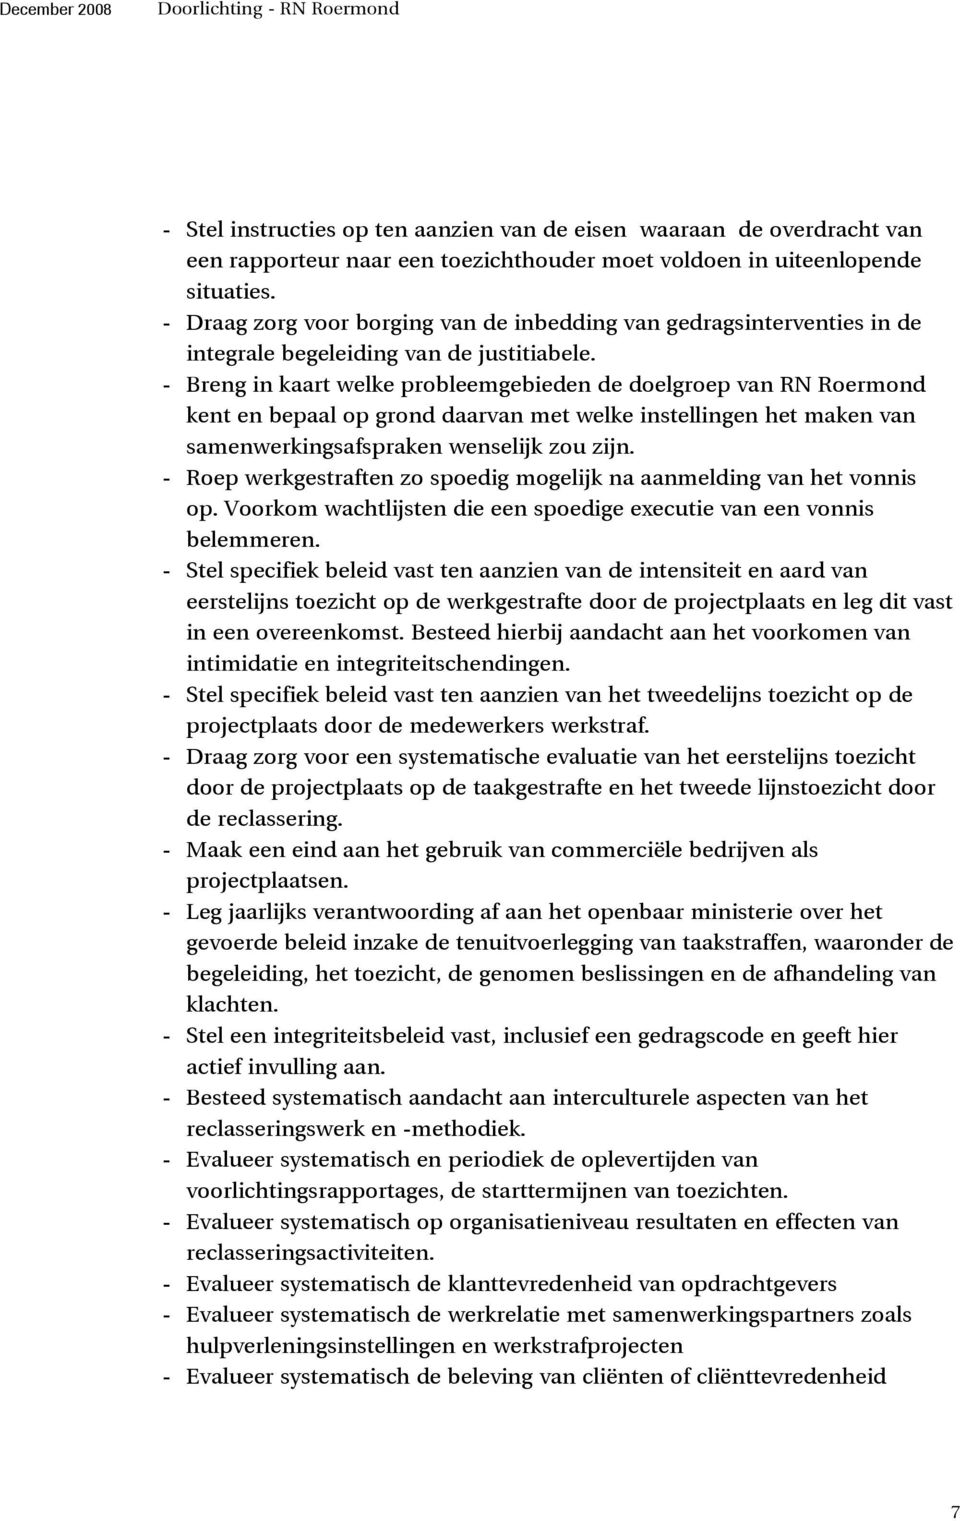 - Breng in kaart welke probleemgebieden de doelgroep van RN Roermond kent en bepaal op grond daarvan met welke instellingen het maken van samenwerkingsafspraken wenselijk zou zijn.